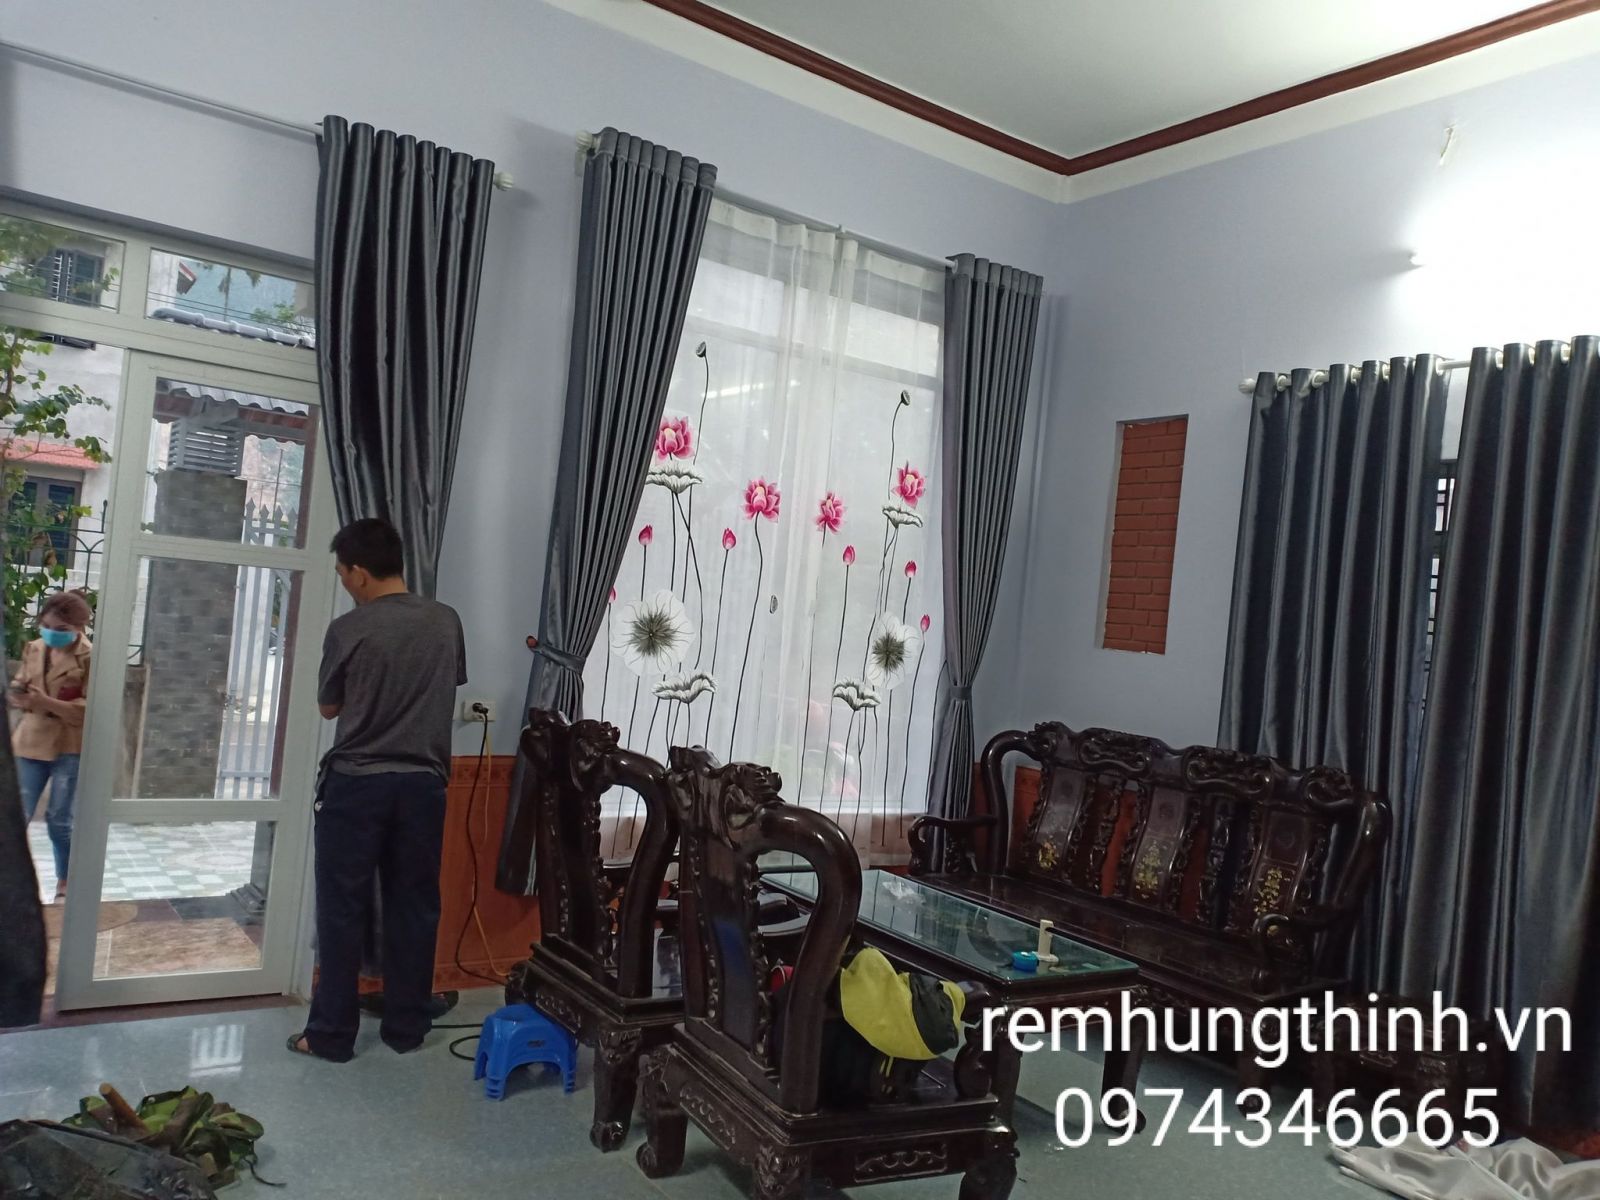 Địa chỉ cung cấp rèm vải 2 lớp tại phường Yên Nghĩa, Hà Đông, Hà Nội